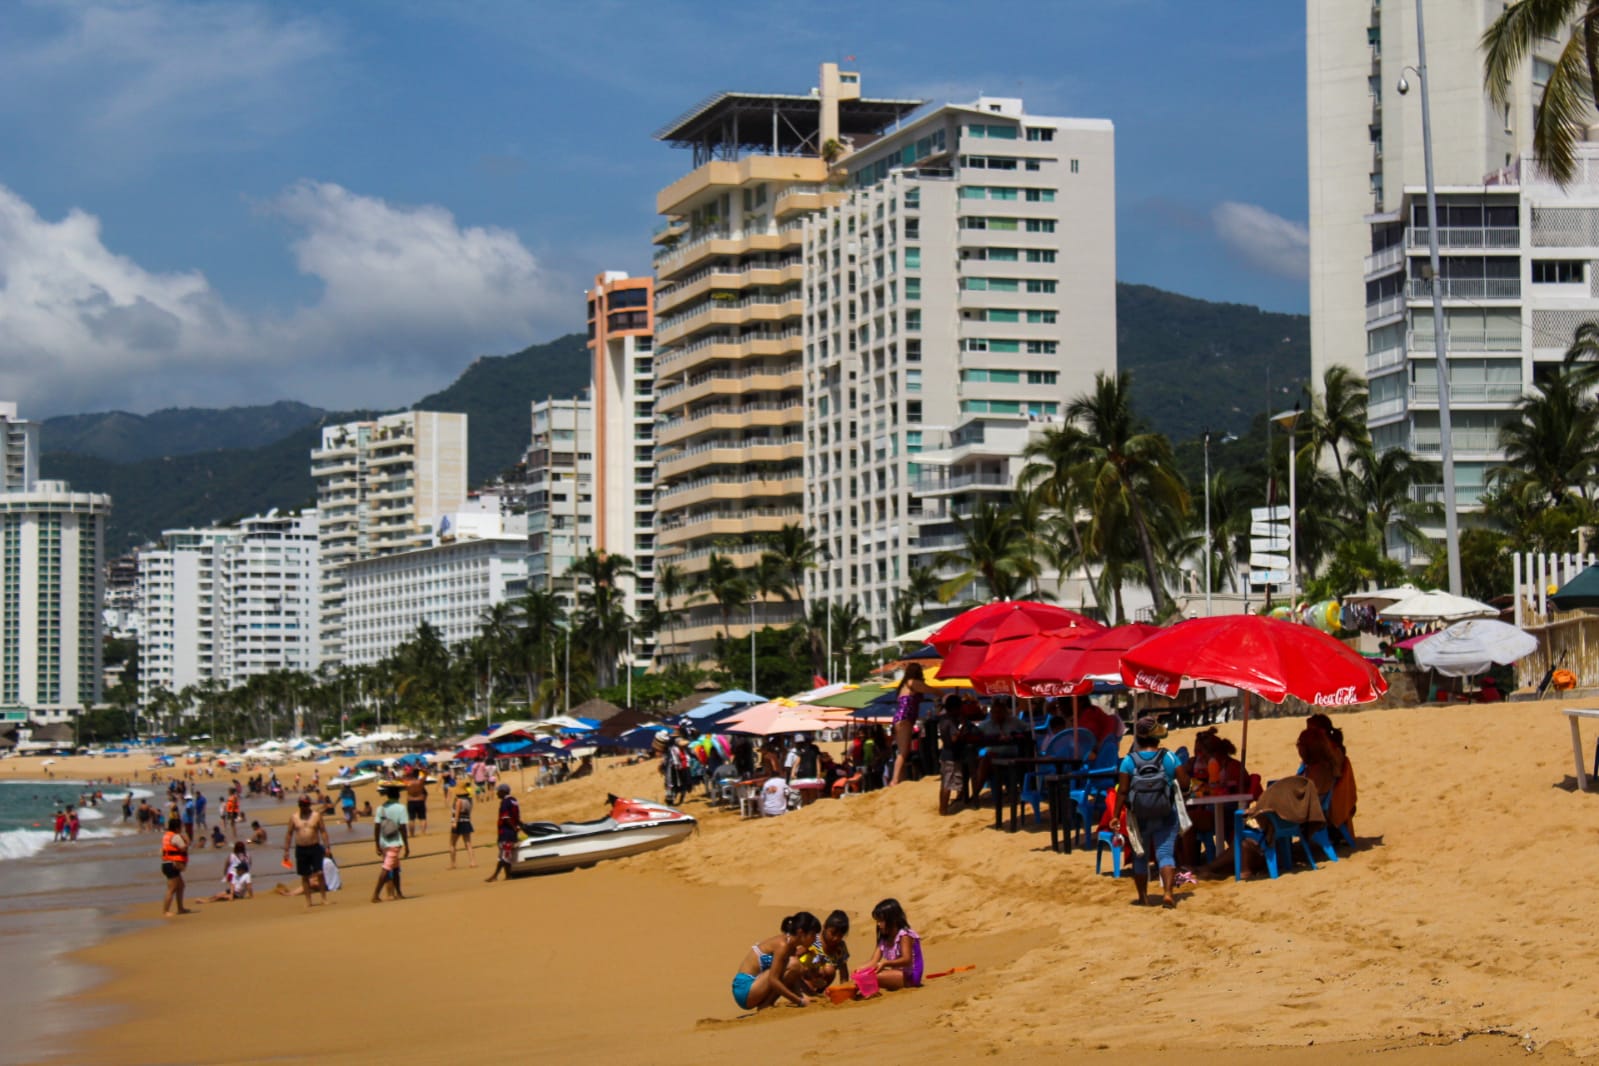 Acapulco es un lugar especial, vengan a visitarlo: turistas